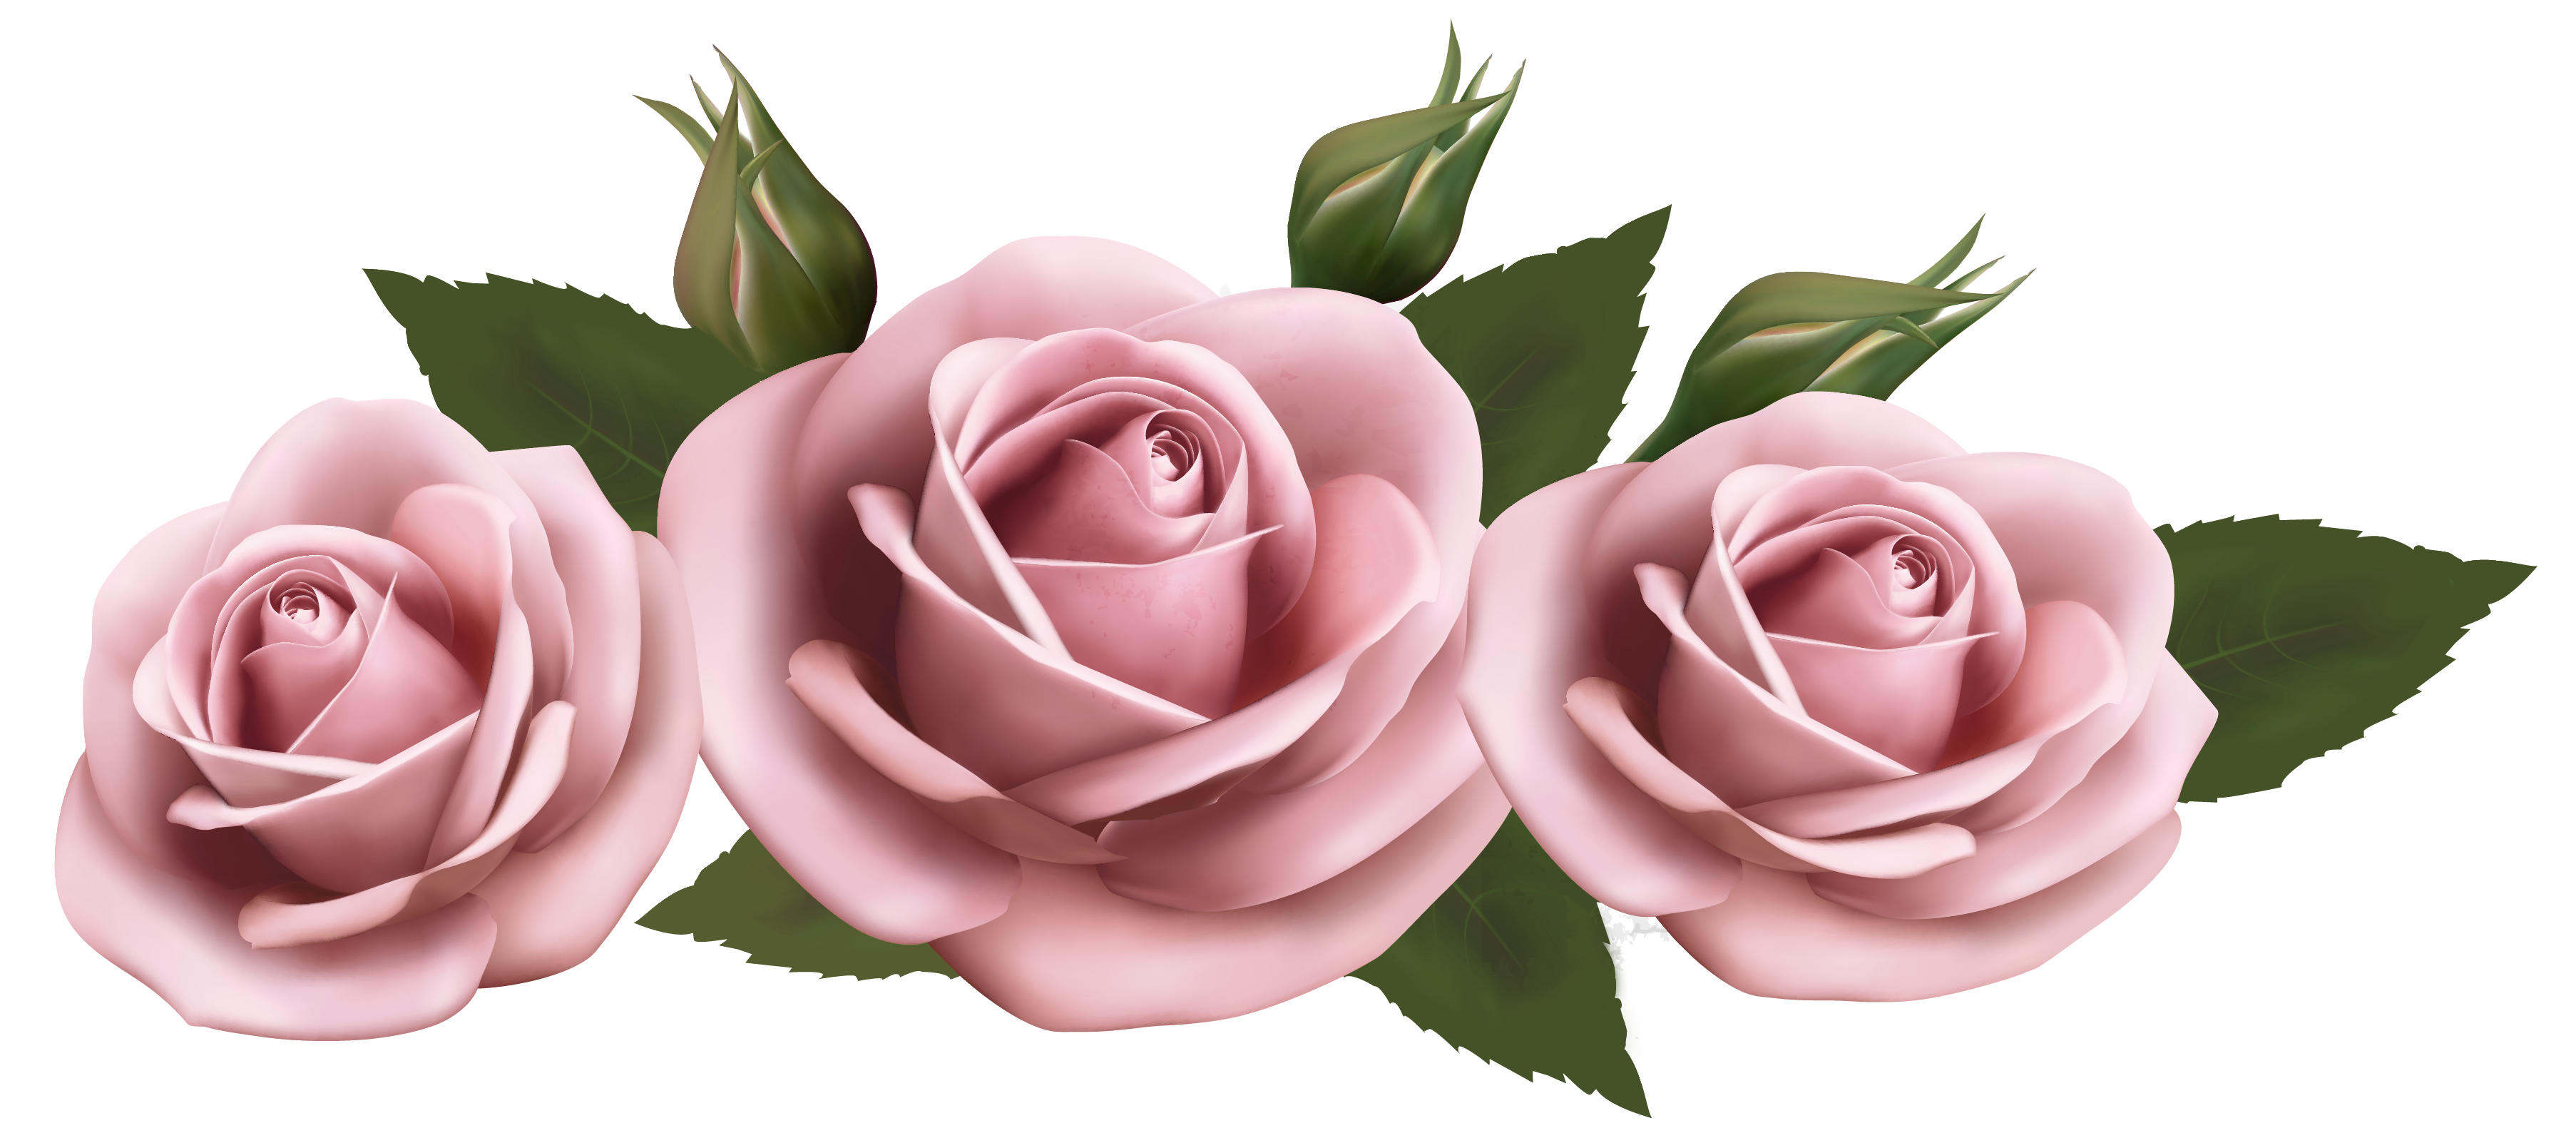 ดอกไม้ดอกกุหลาบสีชมพู PNG Pic